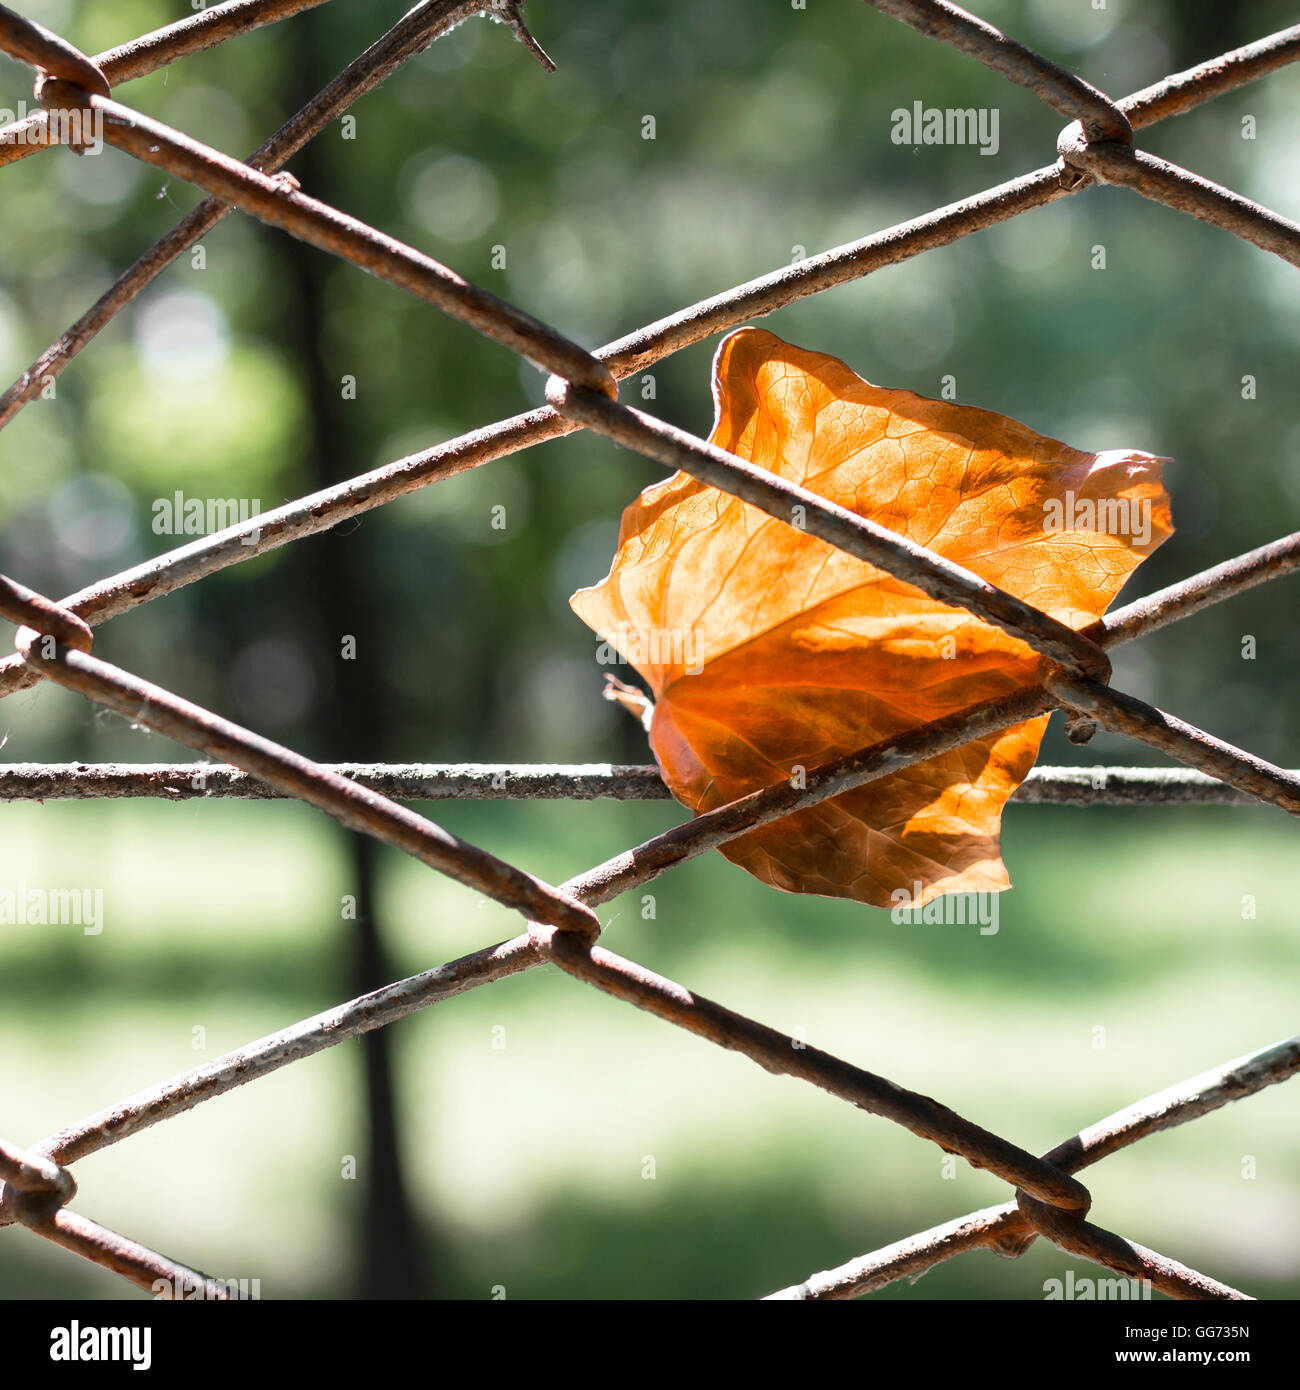 Feuille morte accroché sur rusty metal fence net. Arrière-plan de l'automne. Banque D'Images